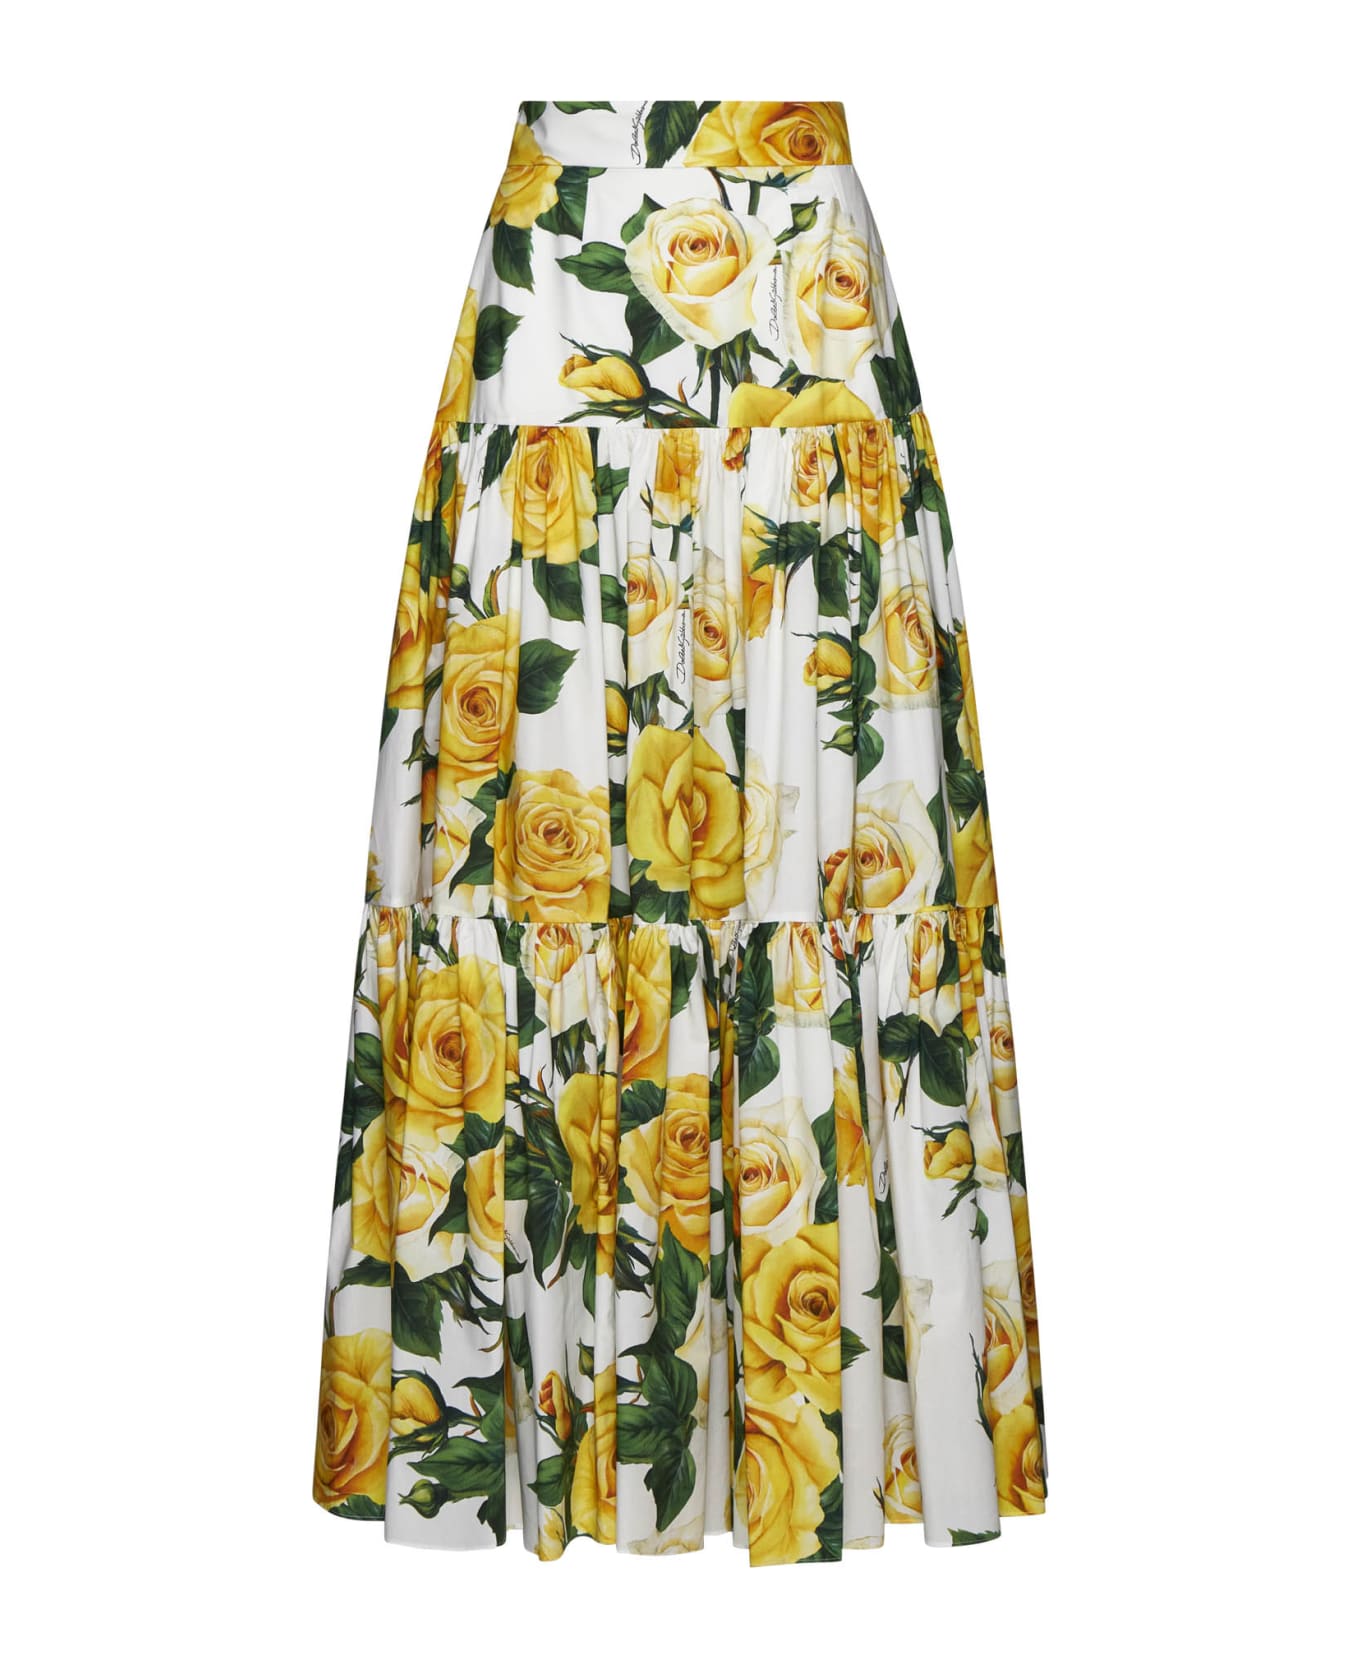 Dolce & Gabbana Pleated Midi Skirt - Rose gialle f.b.nat スカート